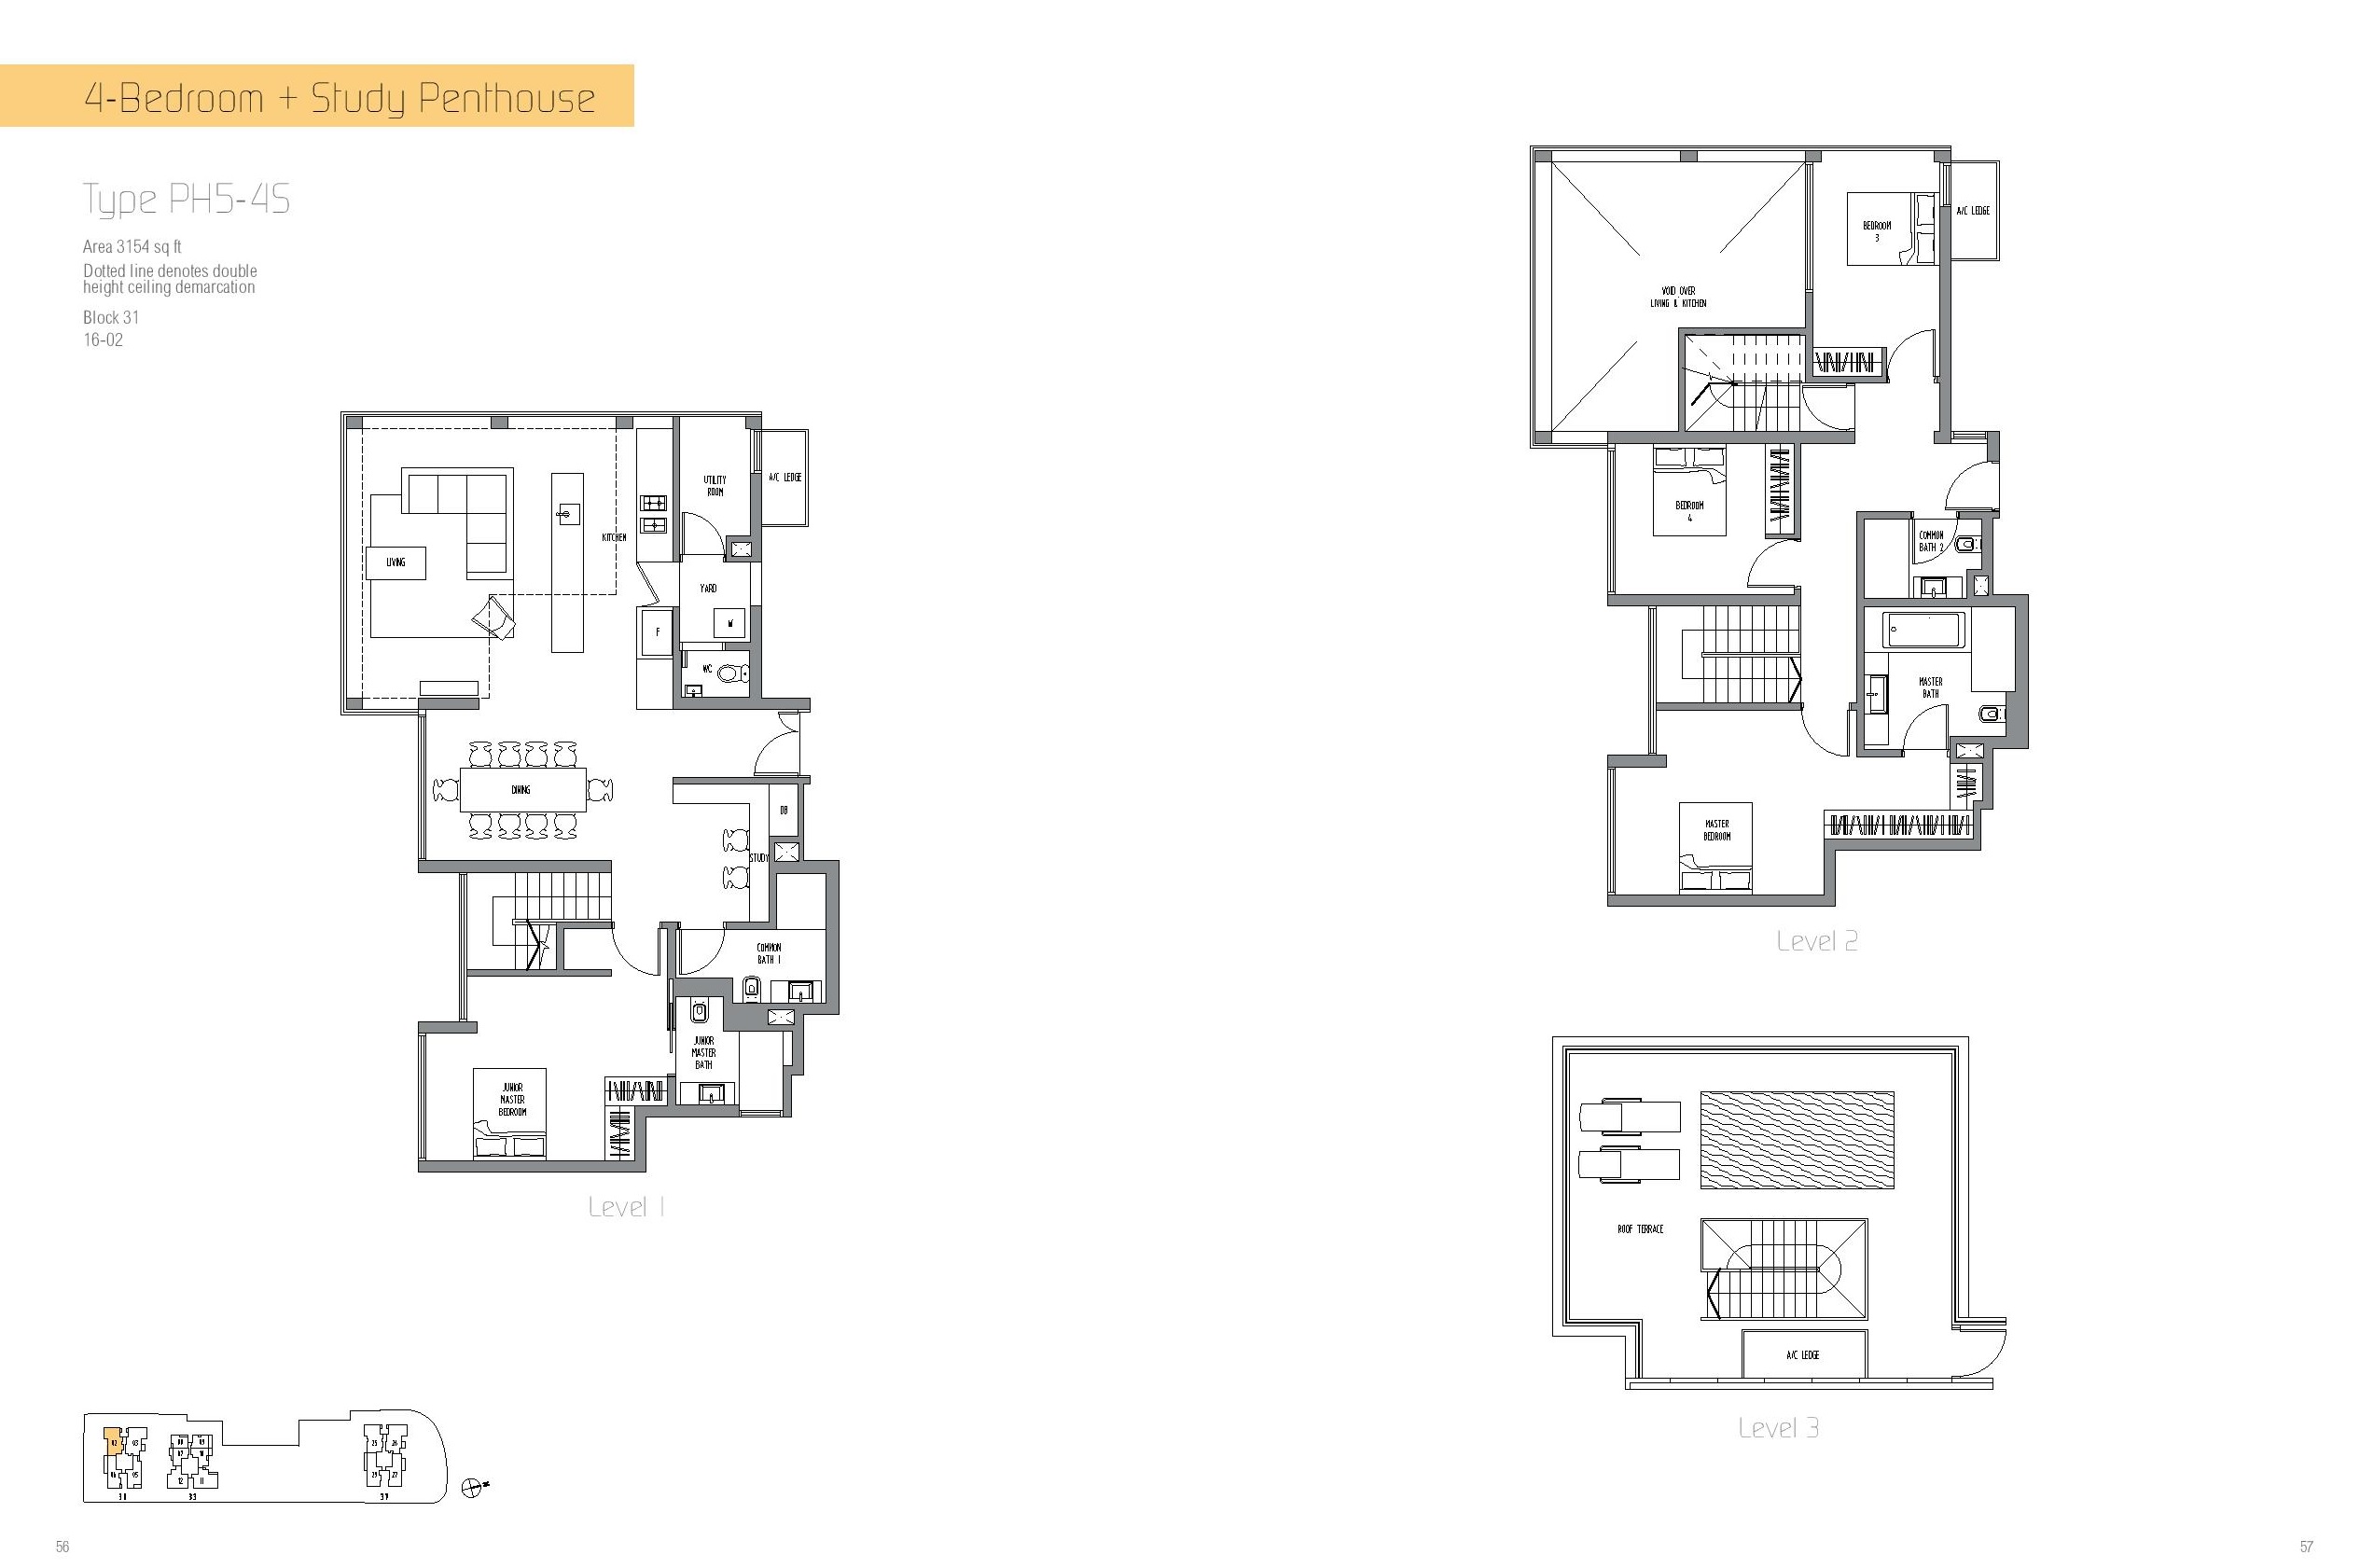 Sennett Residence 4 Bedroom + Study Penthouse Type PH5-45 Floor Plan